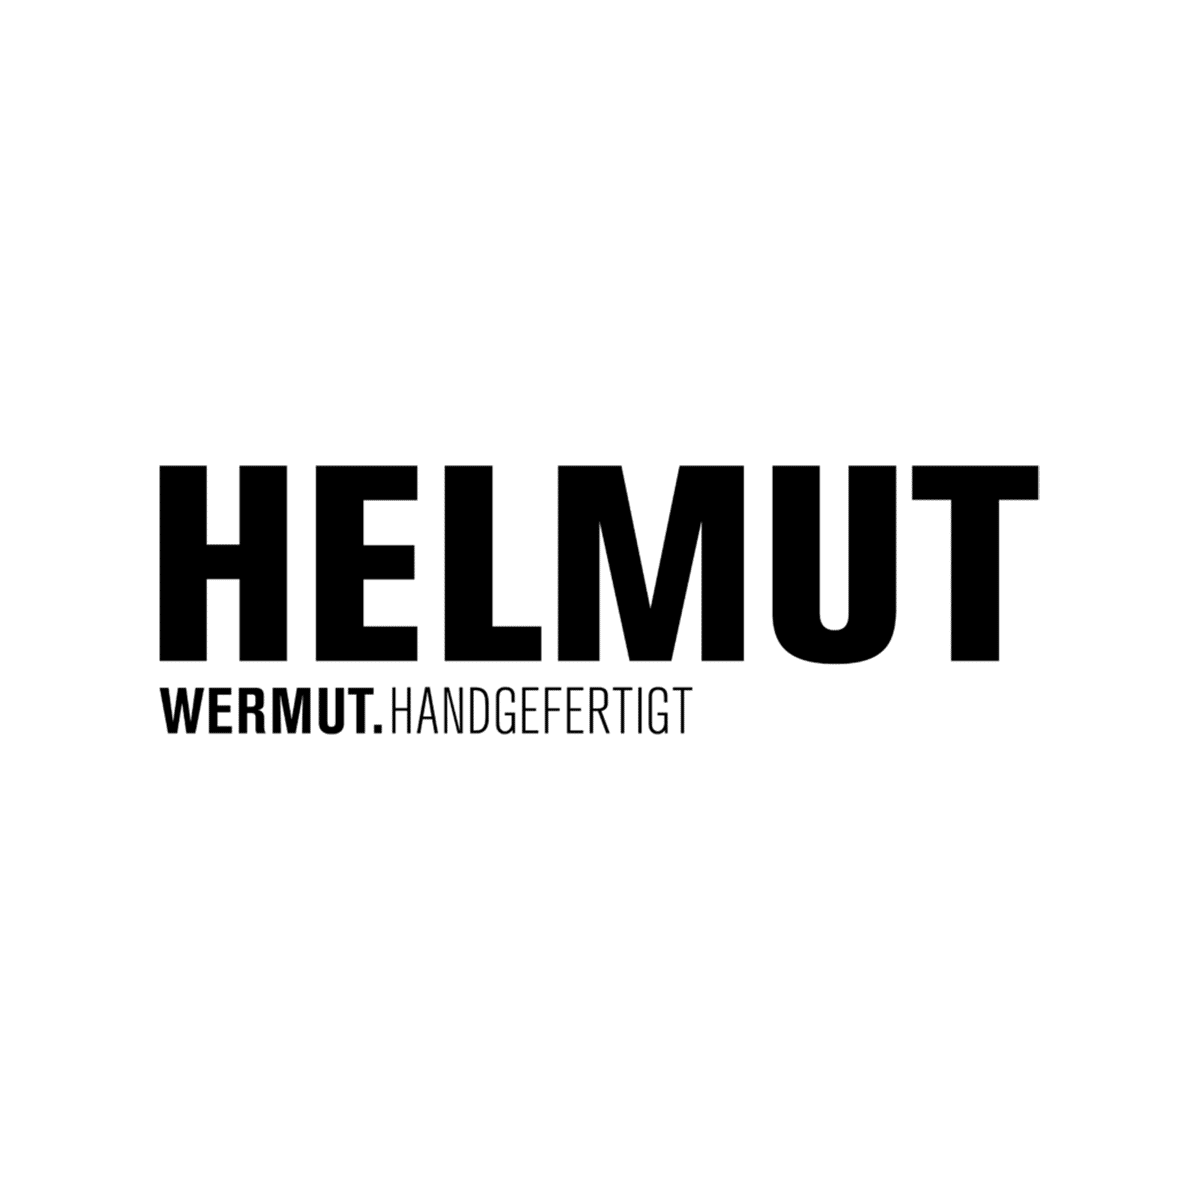 Helmut Wermut Logo